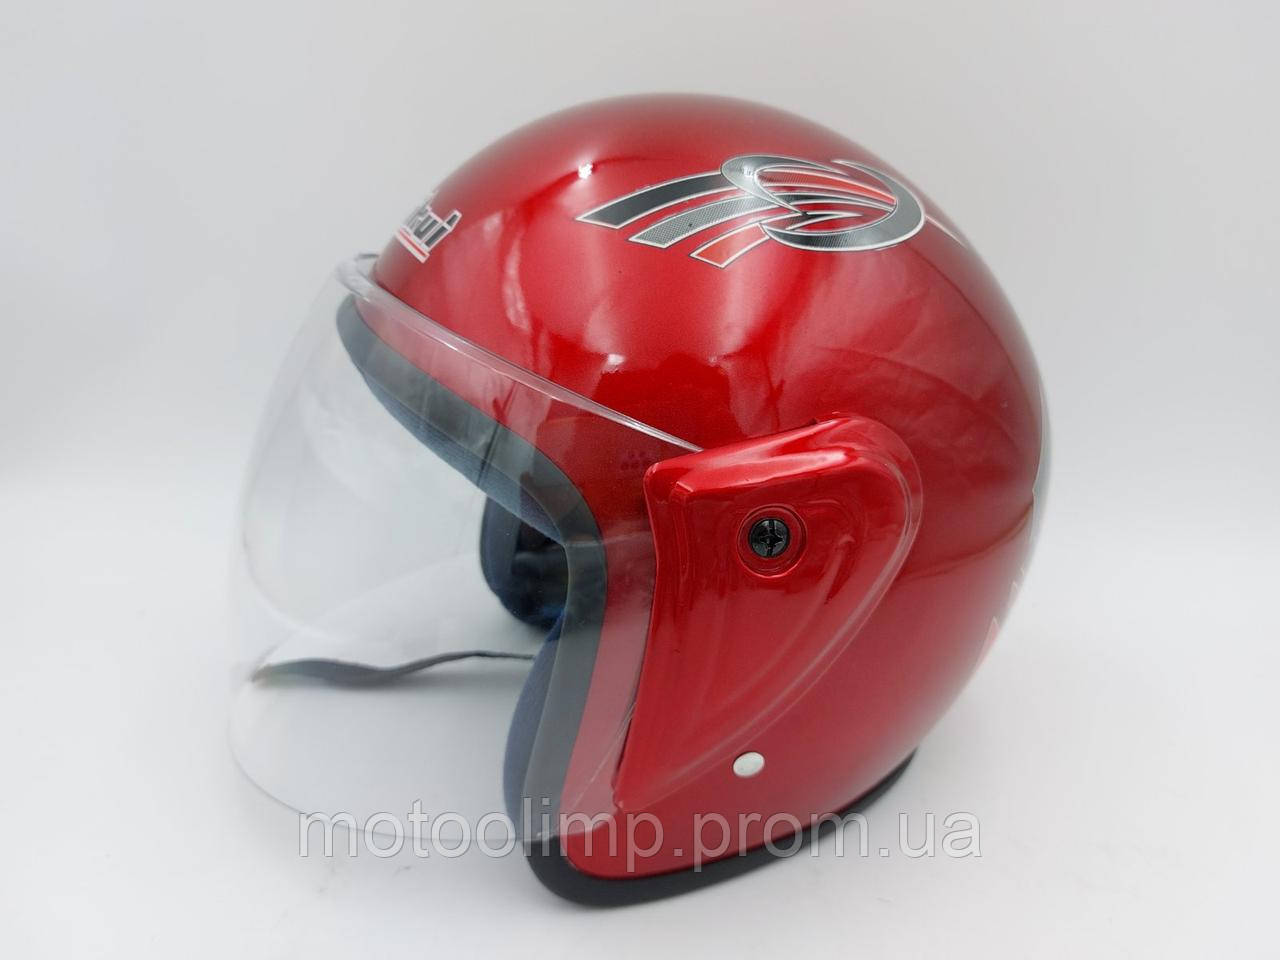 Мото шолом відкритий для скутера та мотоцикла р.M-L (57-59см), літній Червоний